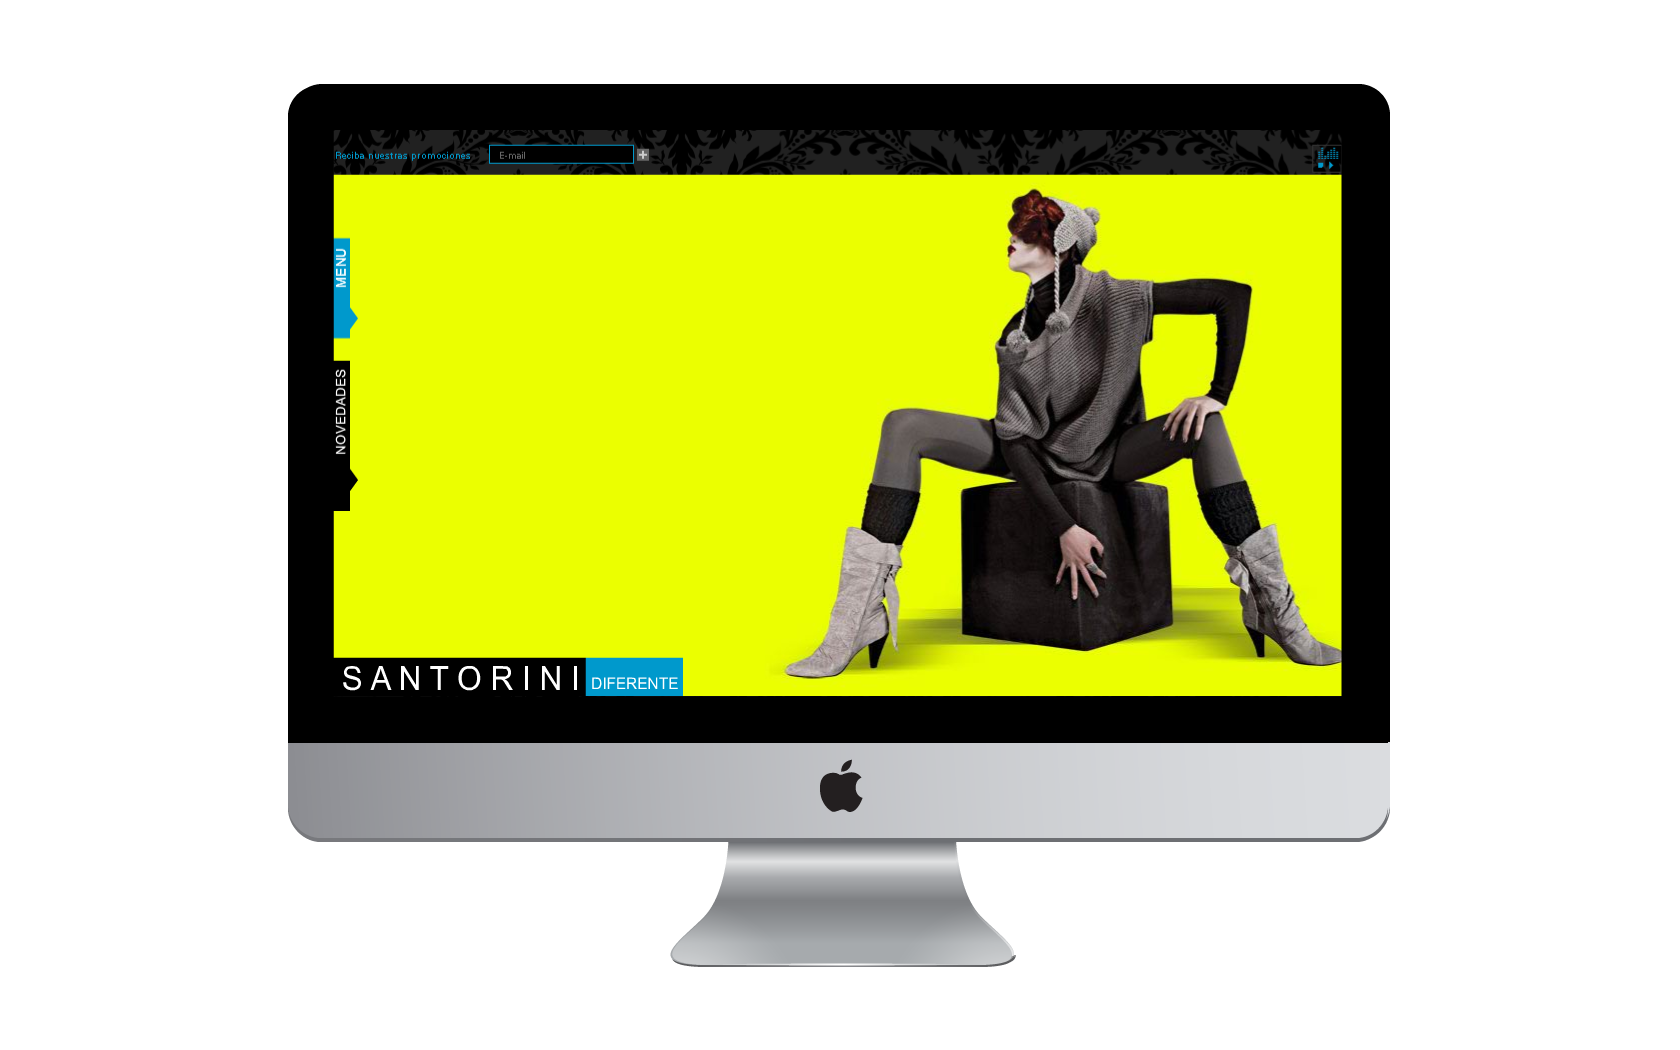 Santorini, version 1.0